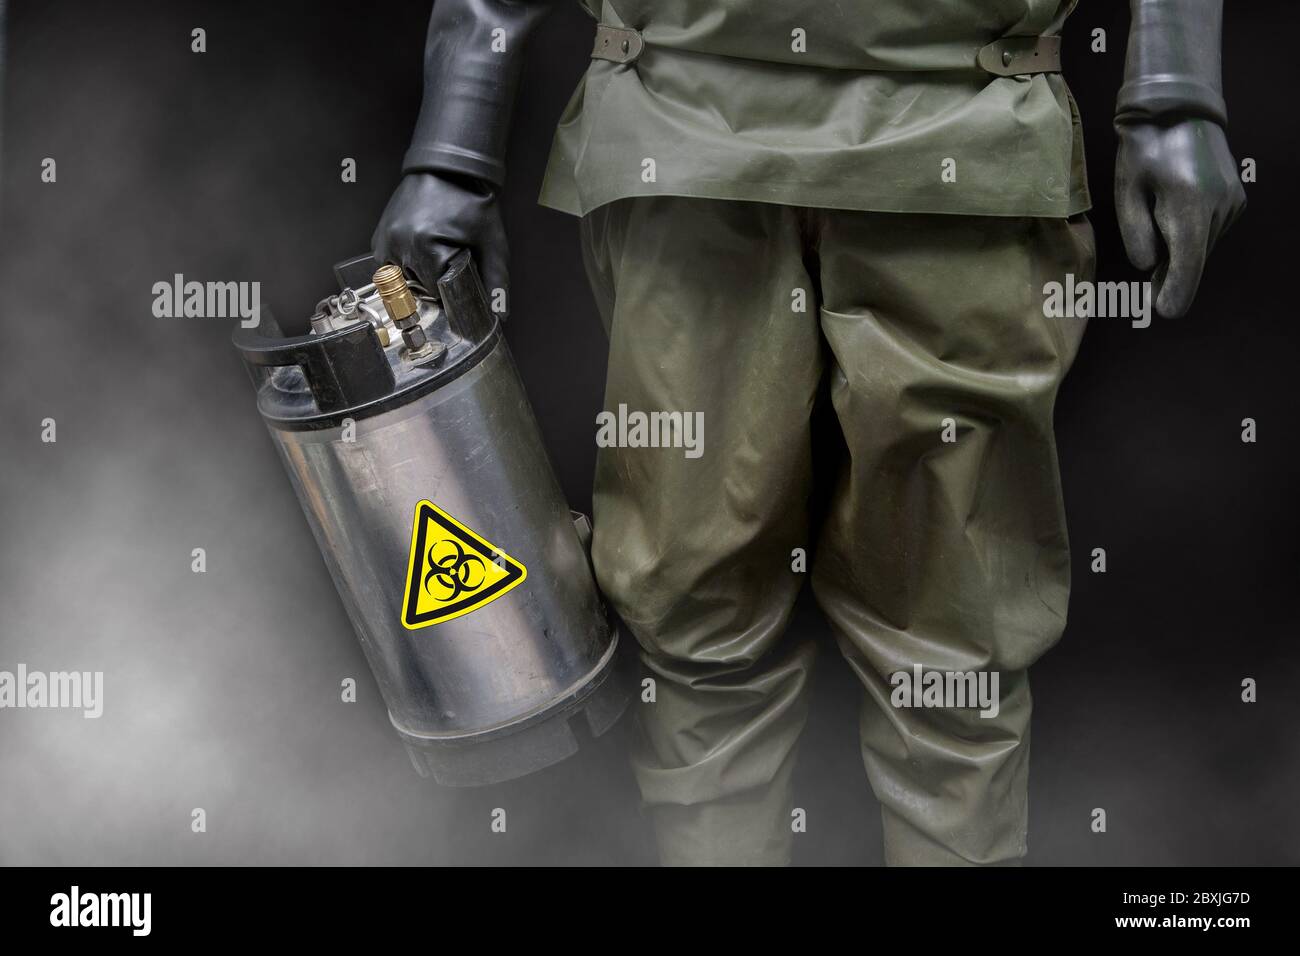 Un homme en costume de protection NBC tient un contenant en métal spécial dans sa main avec un autocollant d'avertissement de danger biologique. Banque D'Images